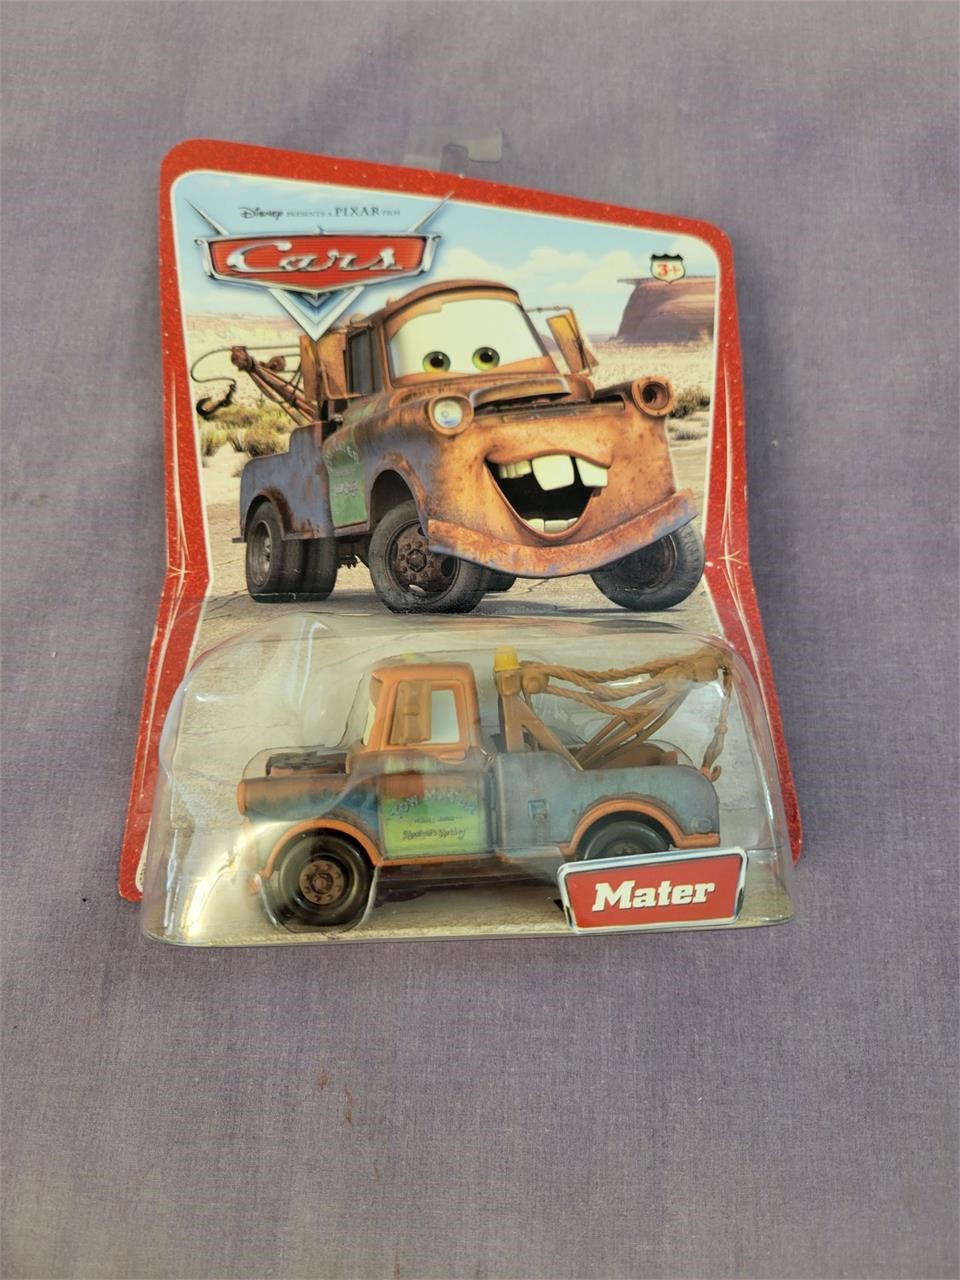 Pixar Cars Mater Toy